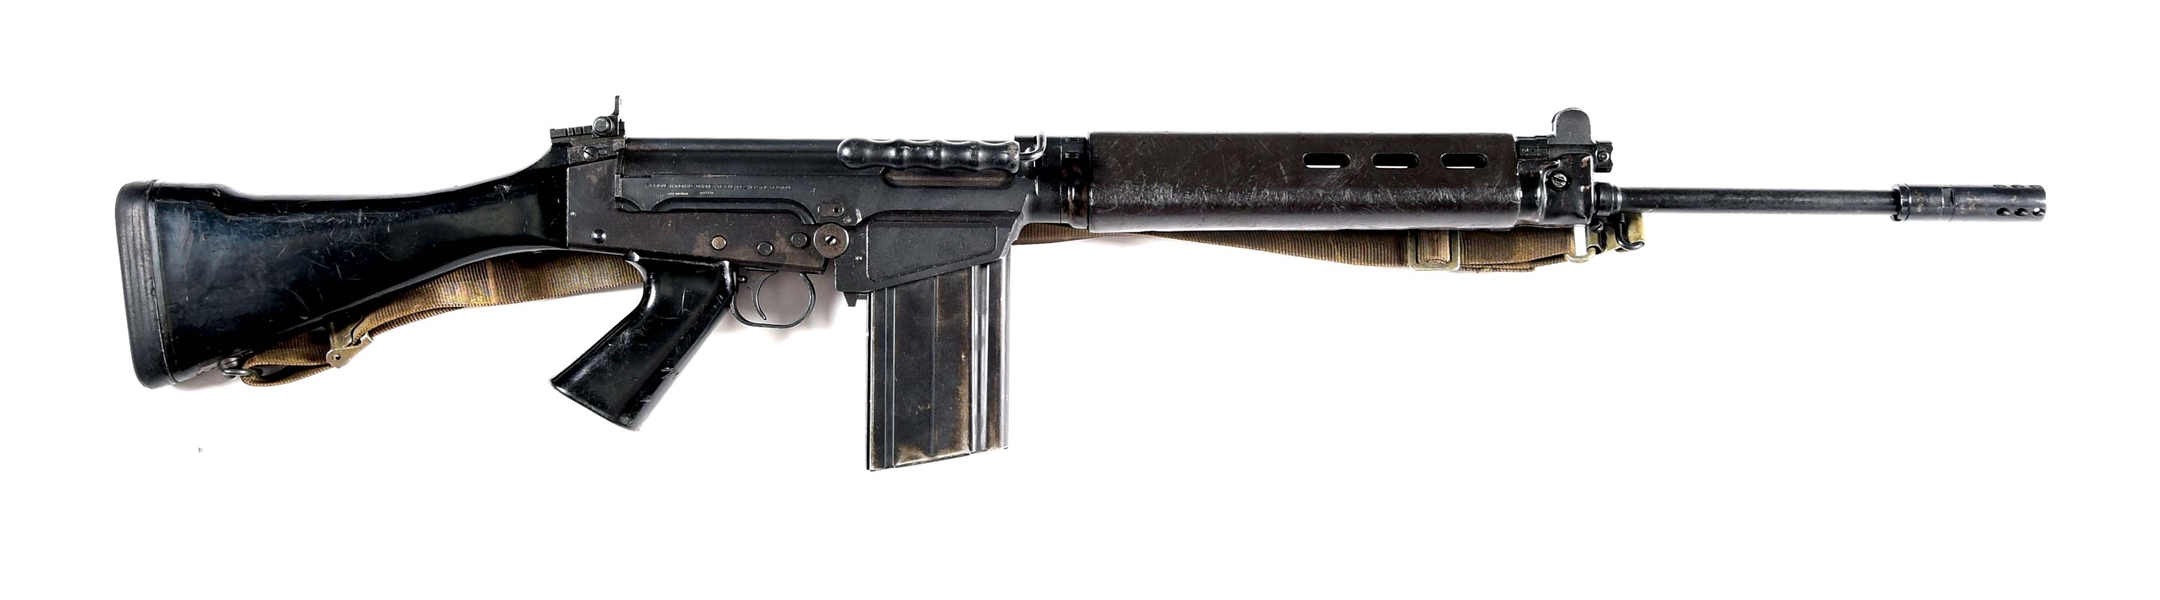 (N) FINE ORIGINAL BELGIAN FN HERSTAL FN-FAL MACHINE GUN (PRE-86 DEALER SAMPLE).